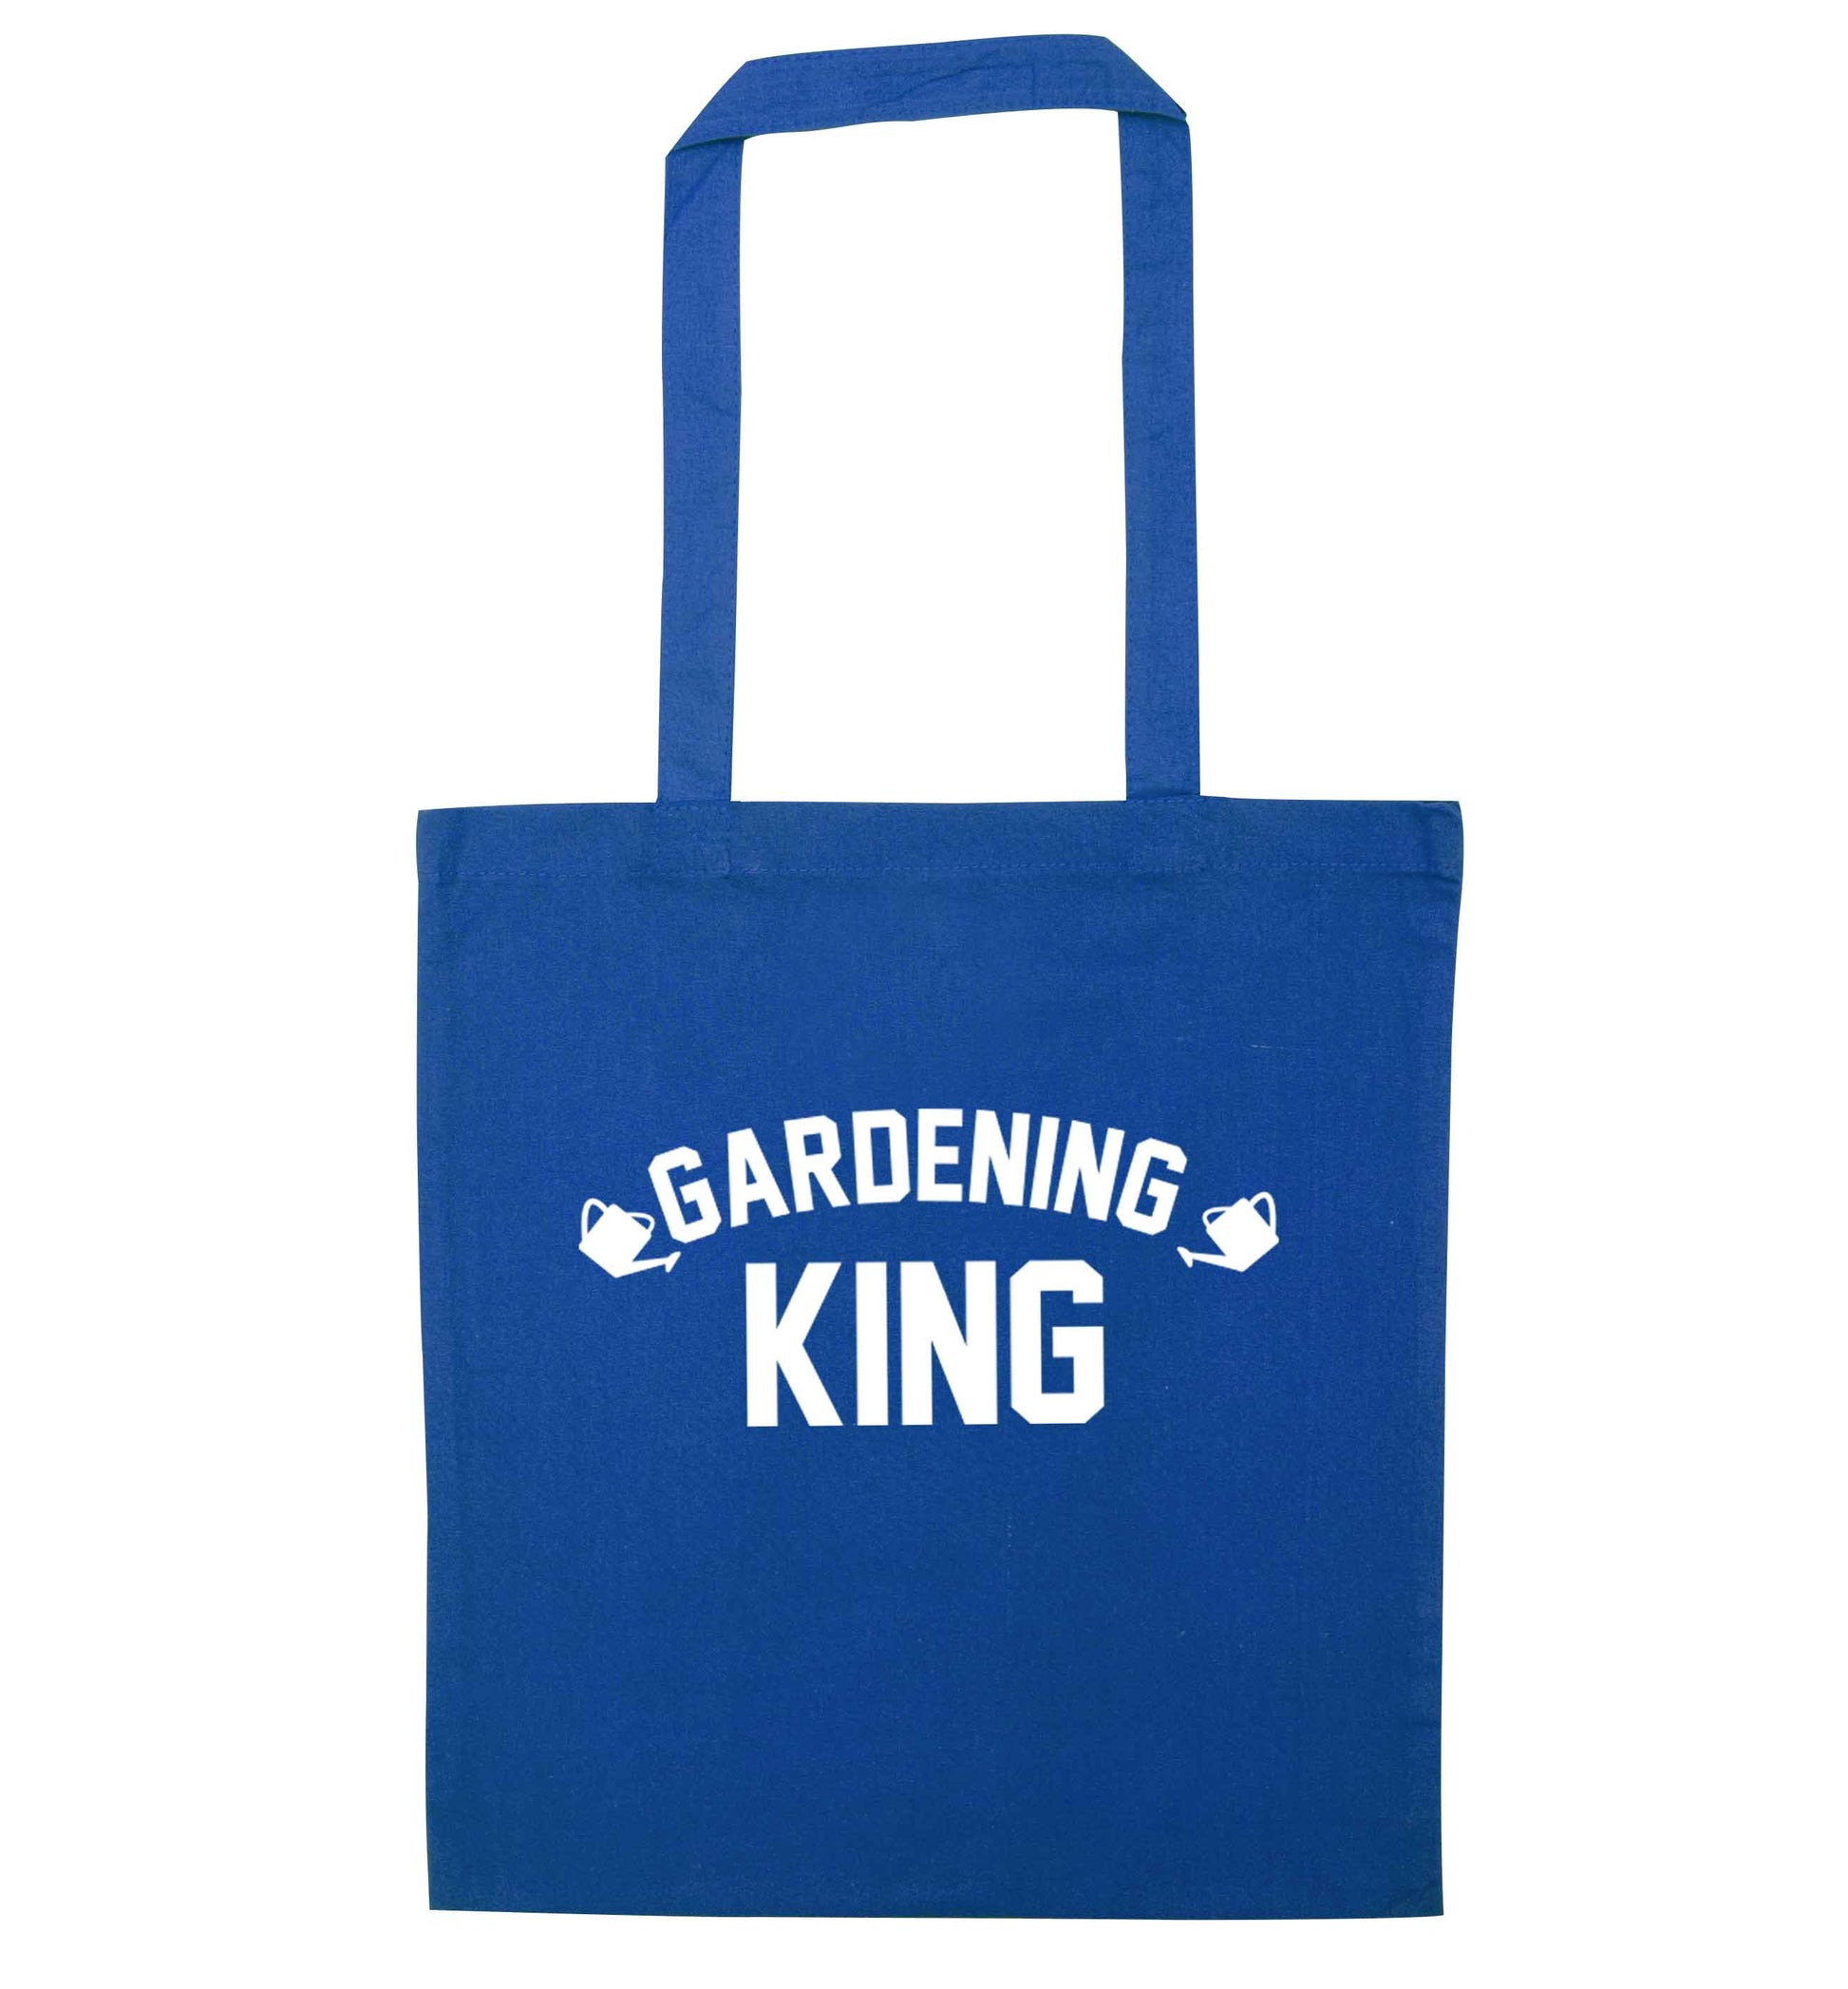 Gardening king blue tote bag